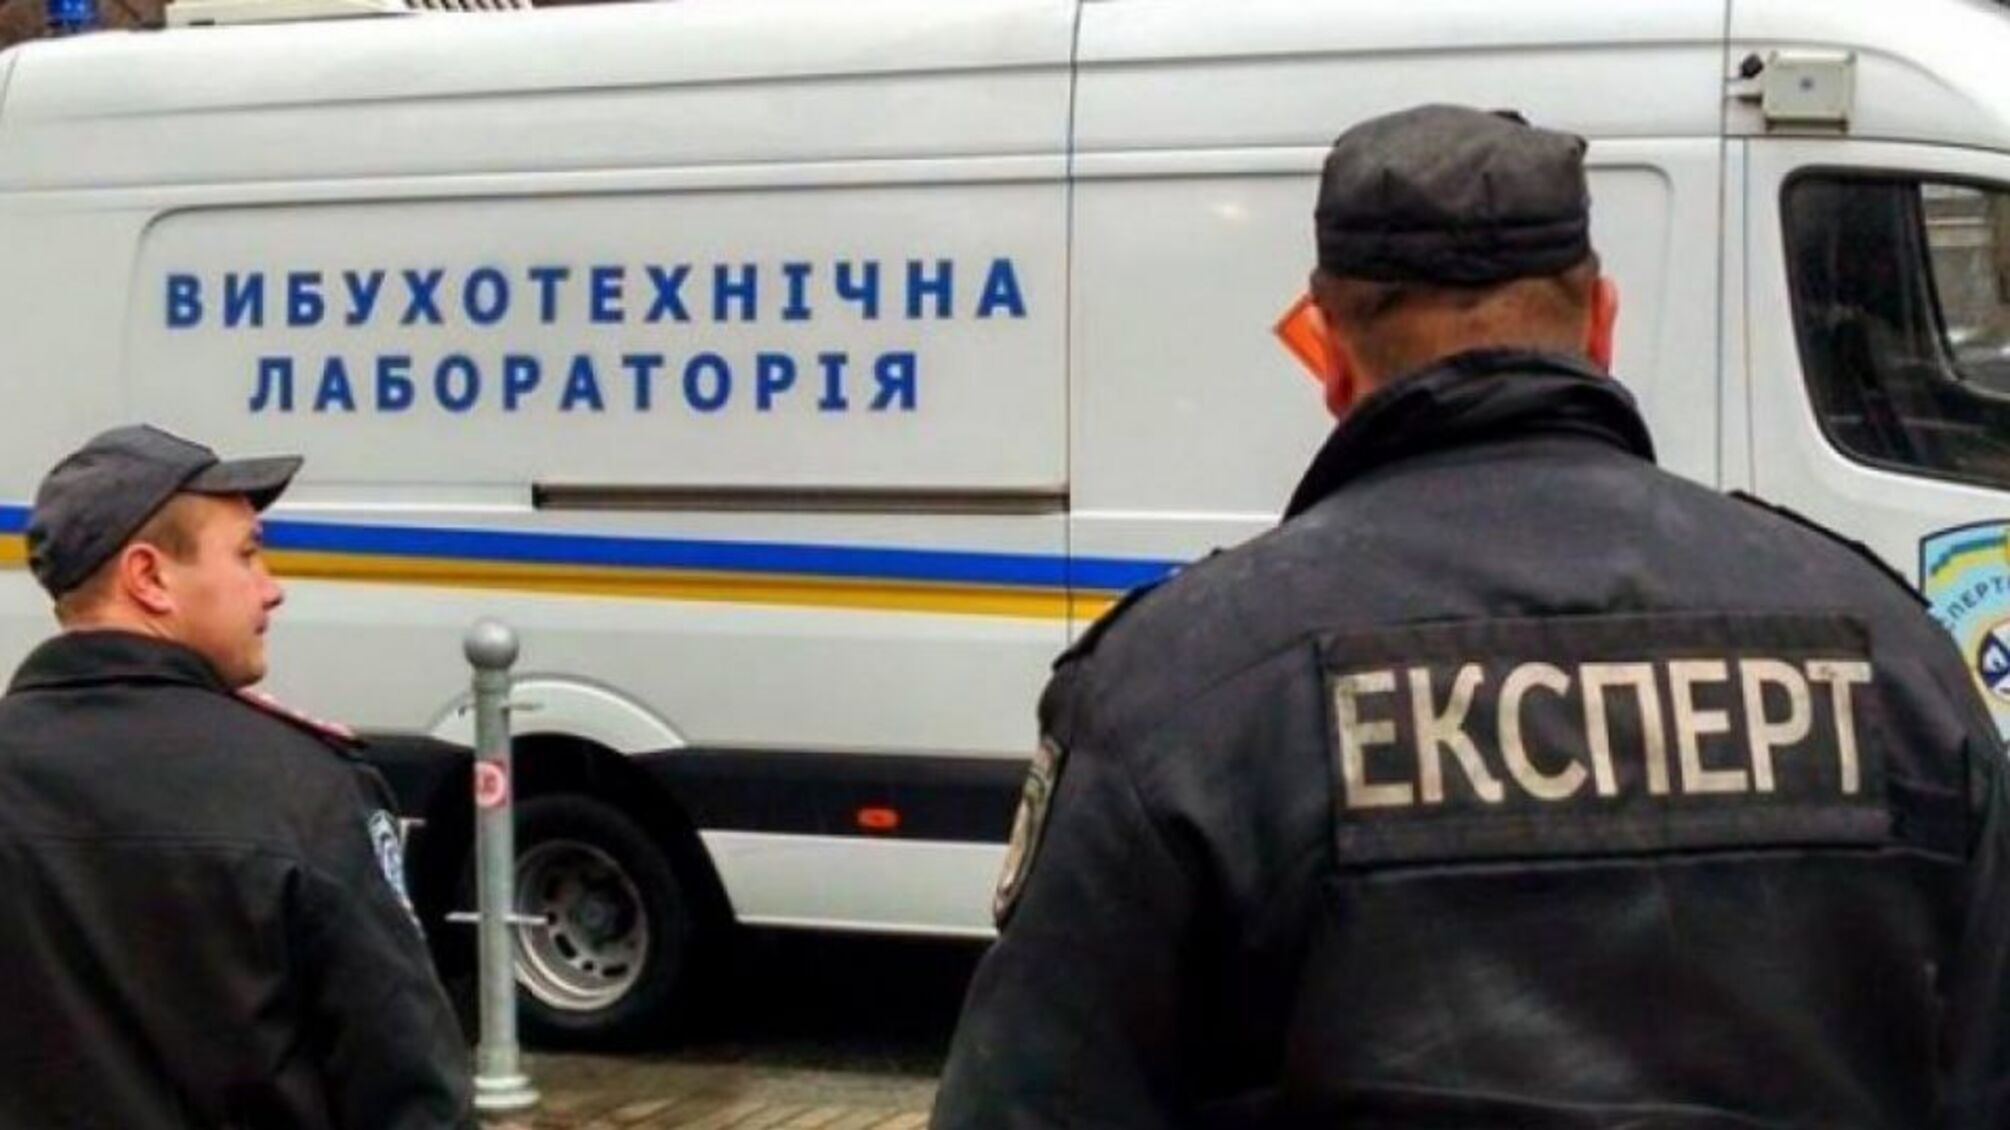 Массовое заминирование: есть информация о взрывчатке во Львове, Виннице и Тернополе